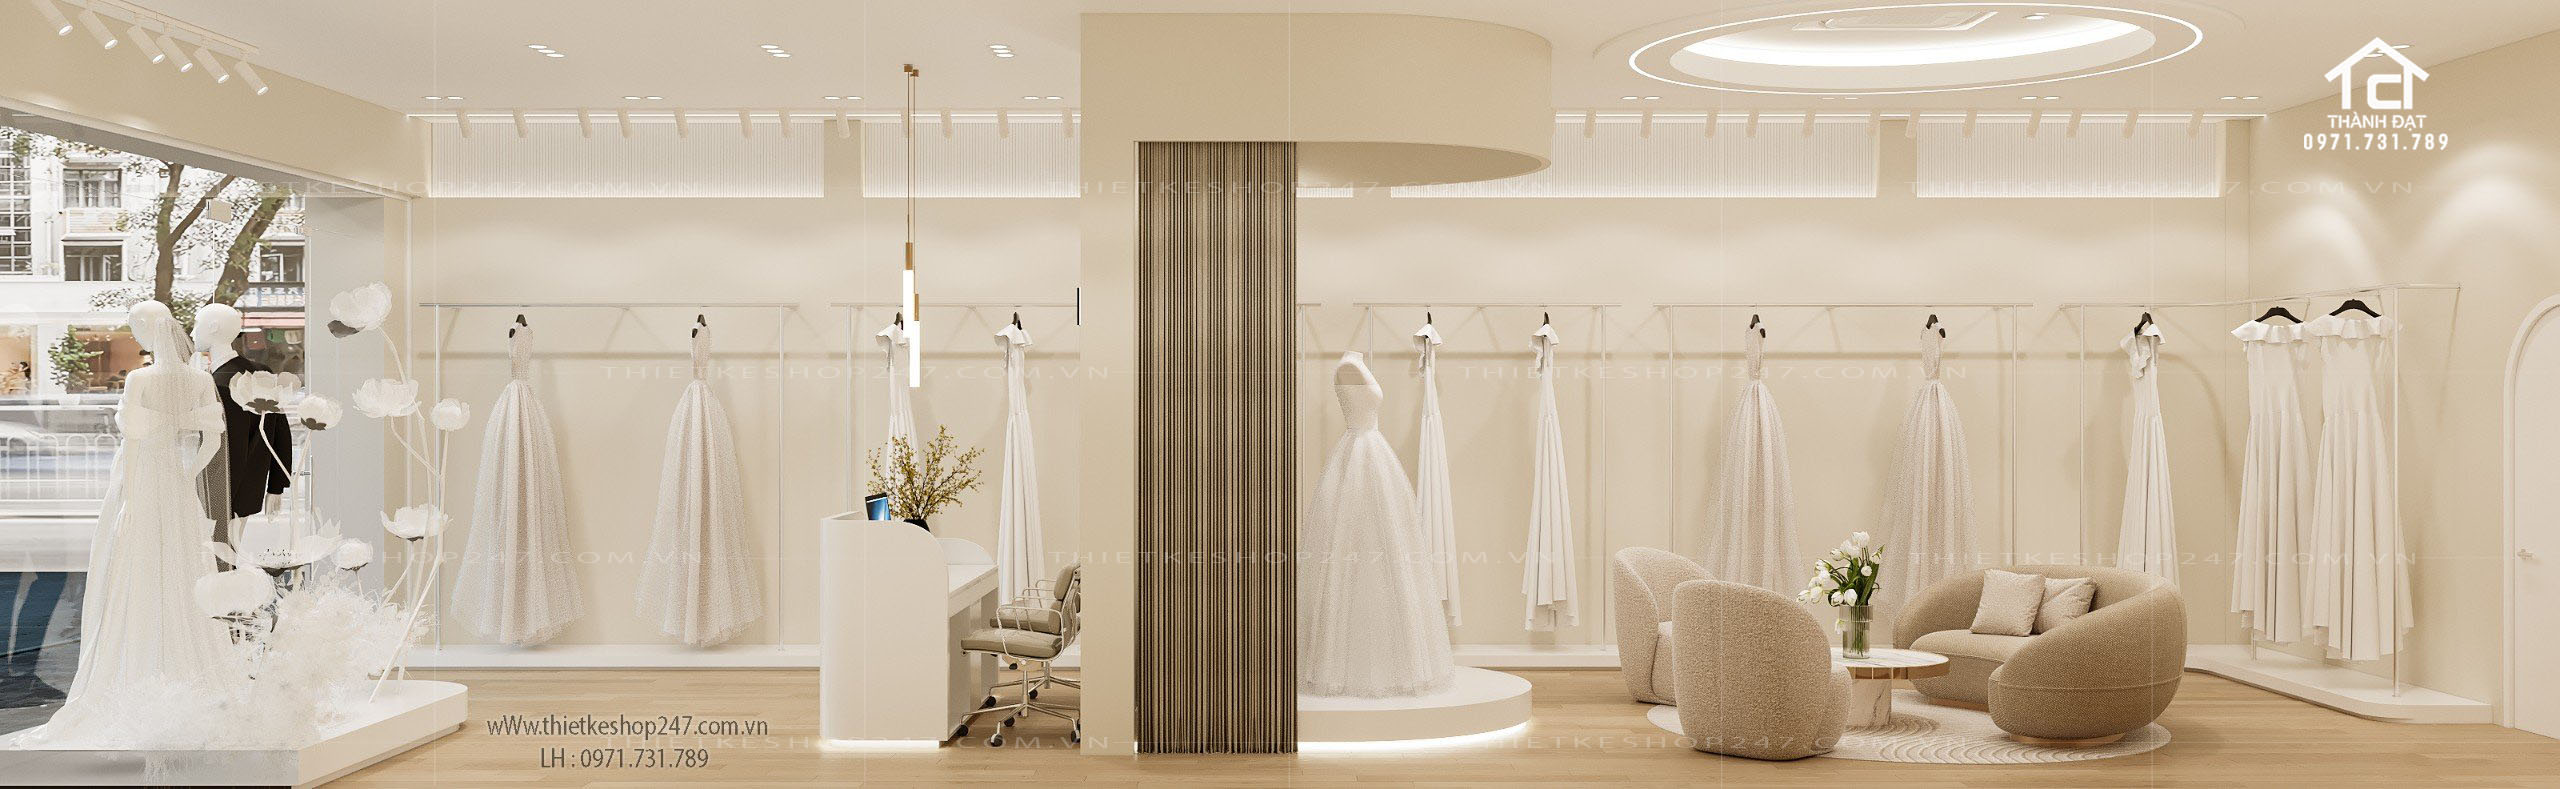 thiết kế studio áo cưới đẹp nổi bật